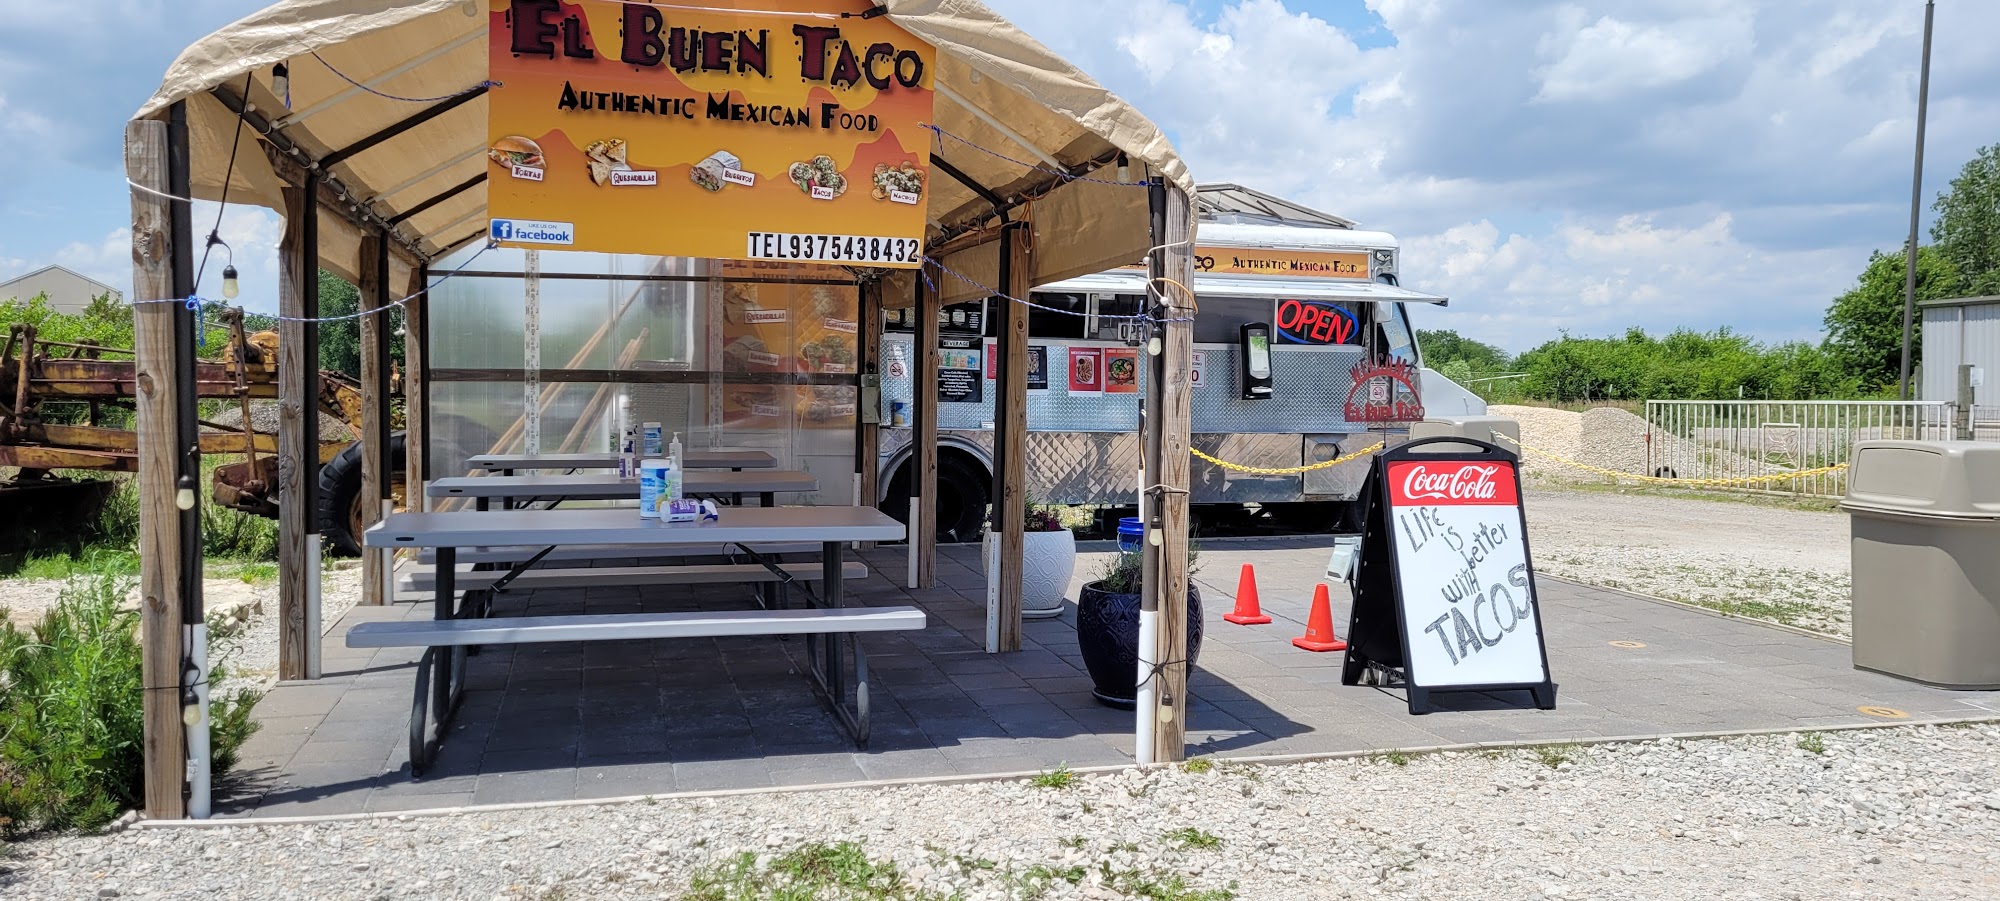 Food Trucks El Buen Taco